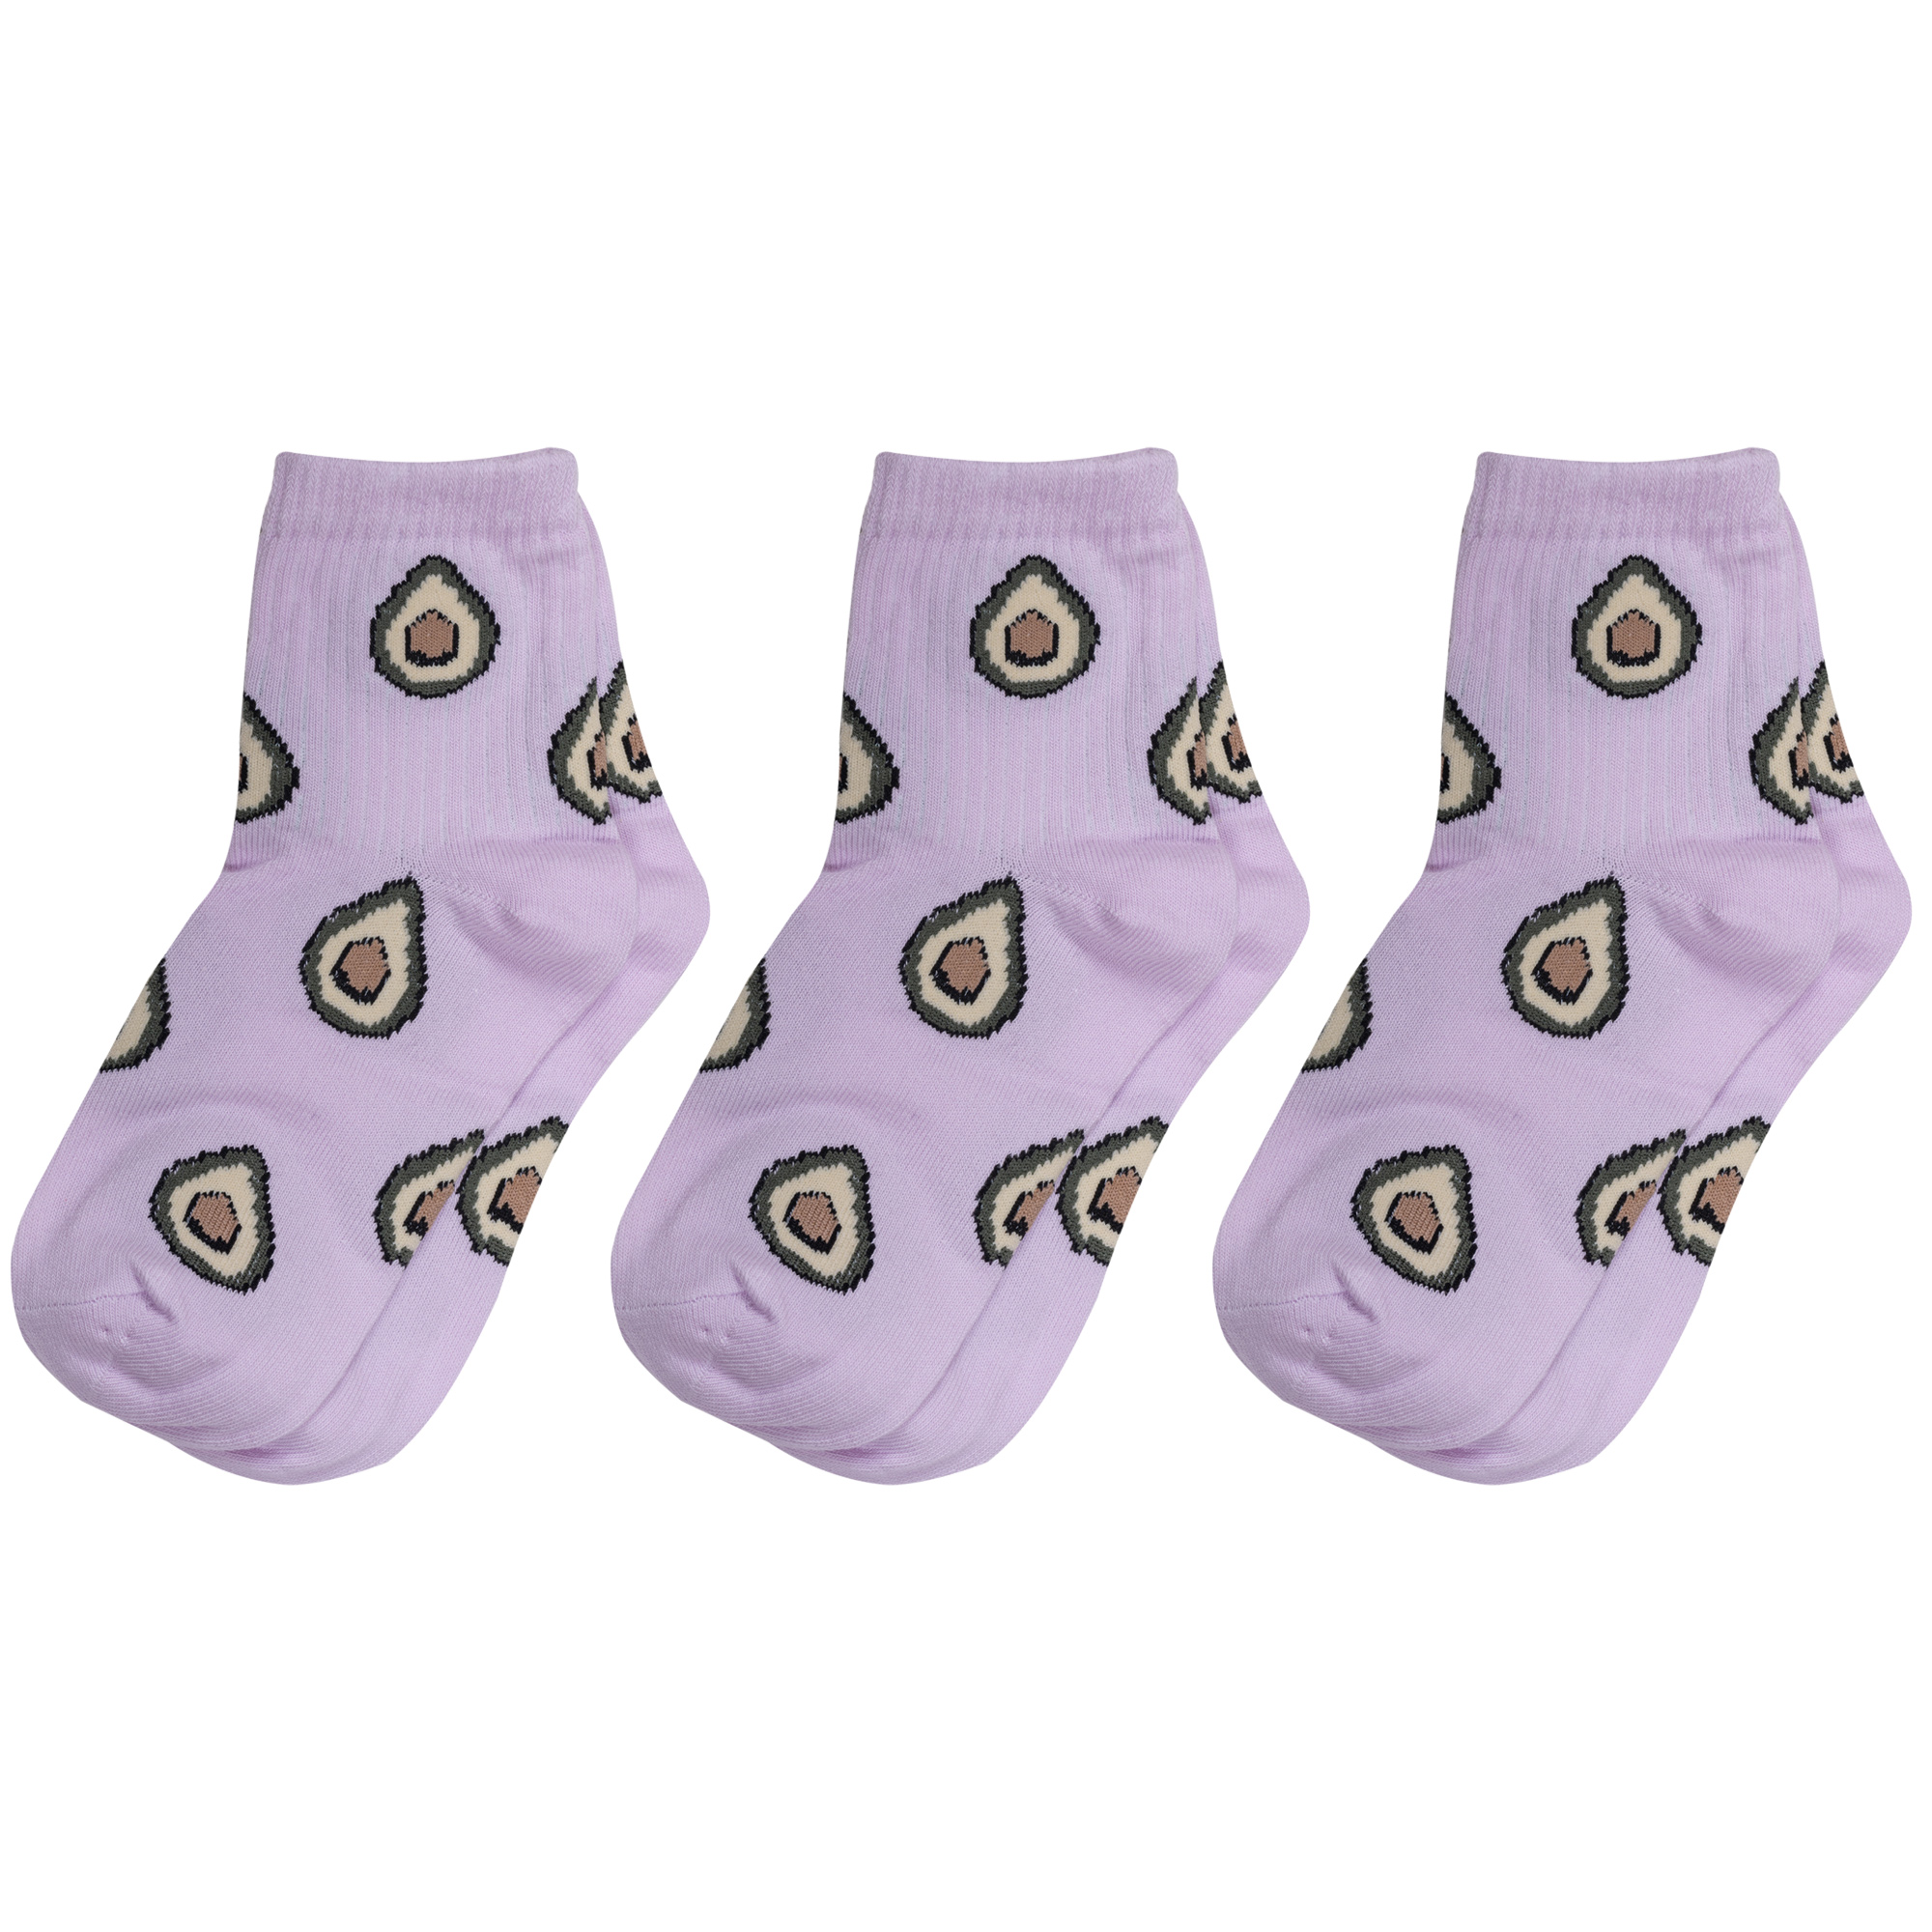 Носки для девочек Альтаир 3-А223 цв. фиолетовый; зеленый; бежевый; коричневый р. 30 наушники jvc ha kd5 v ef kids фиолетовый зеленый